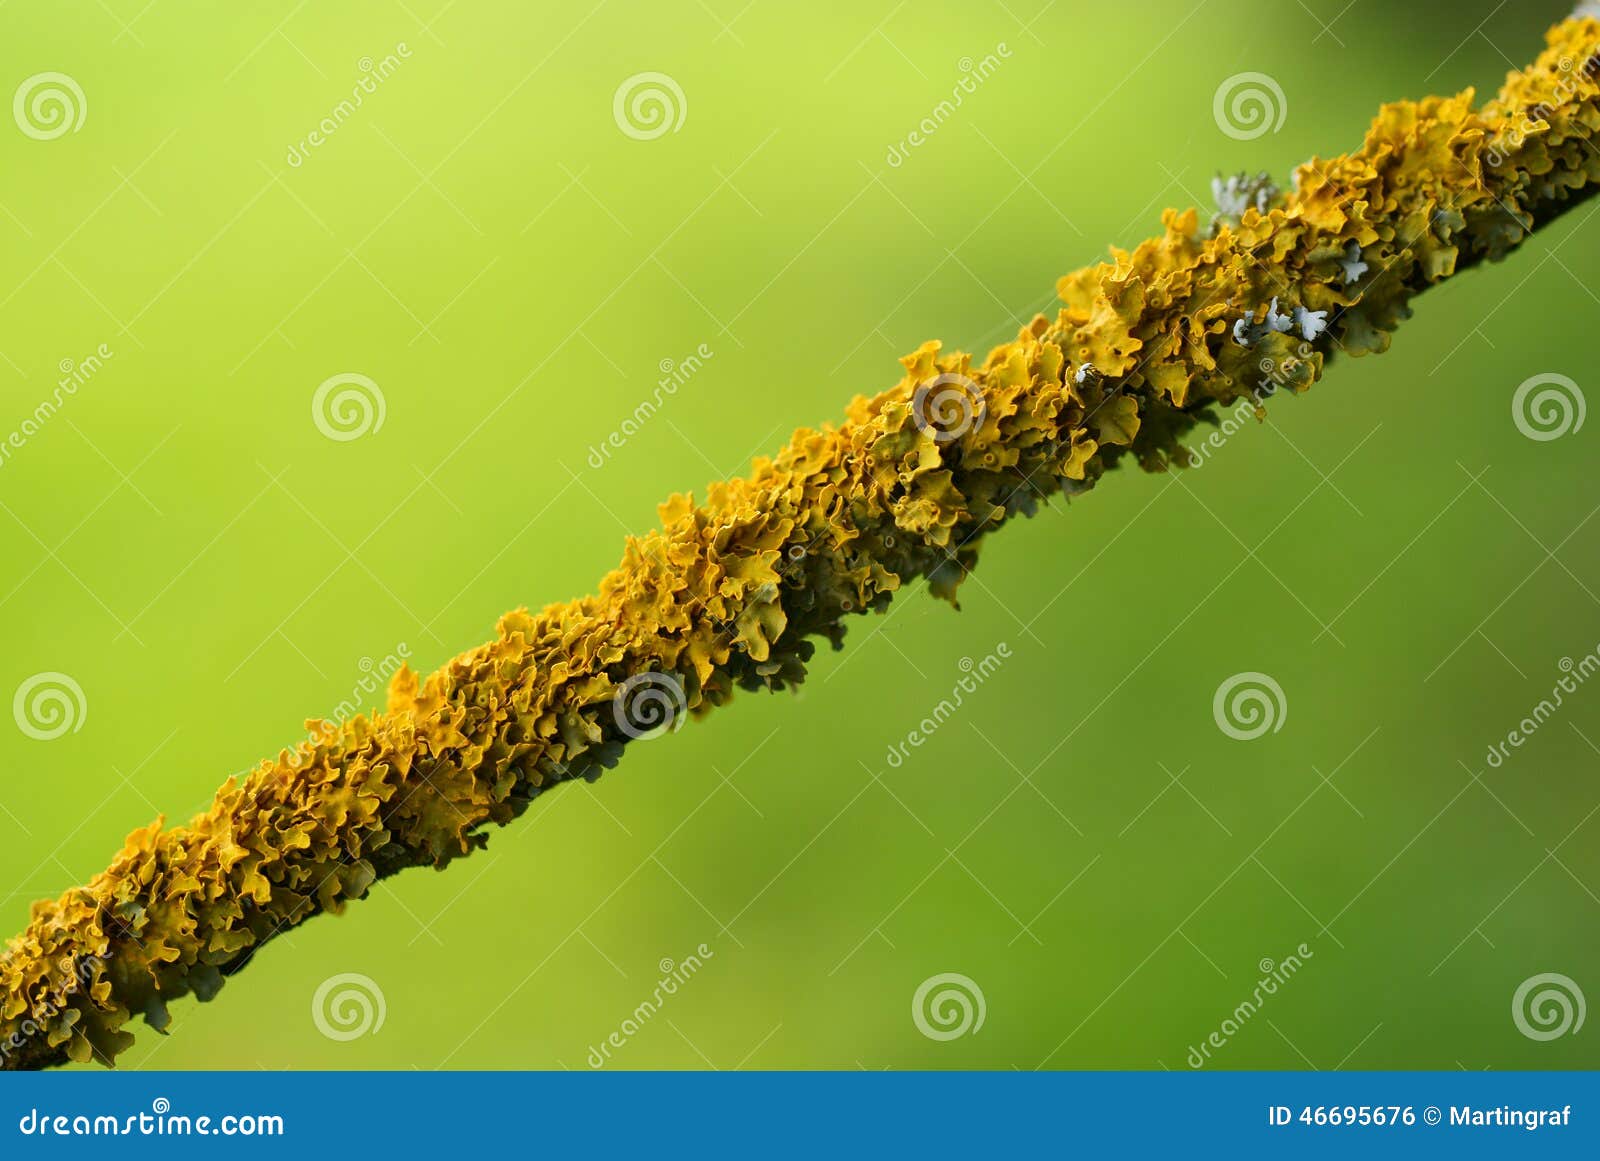 Lichene sulla macro del ramo. Macro colpo del lichene che cresce su un ramo - avvolgere l'intera lunghezza